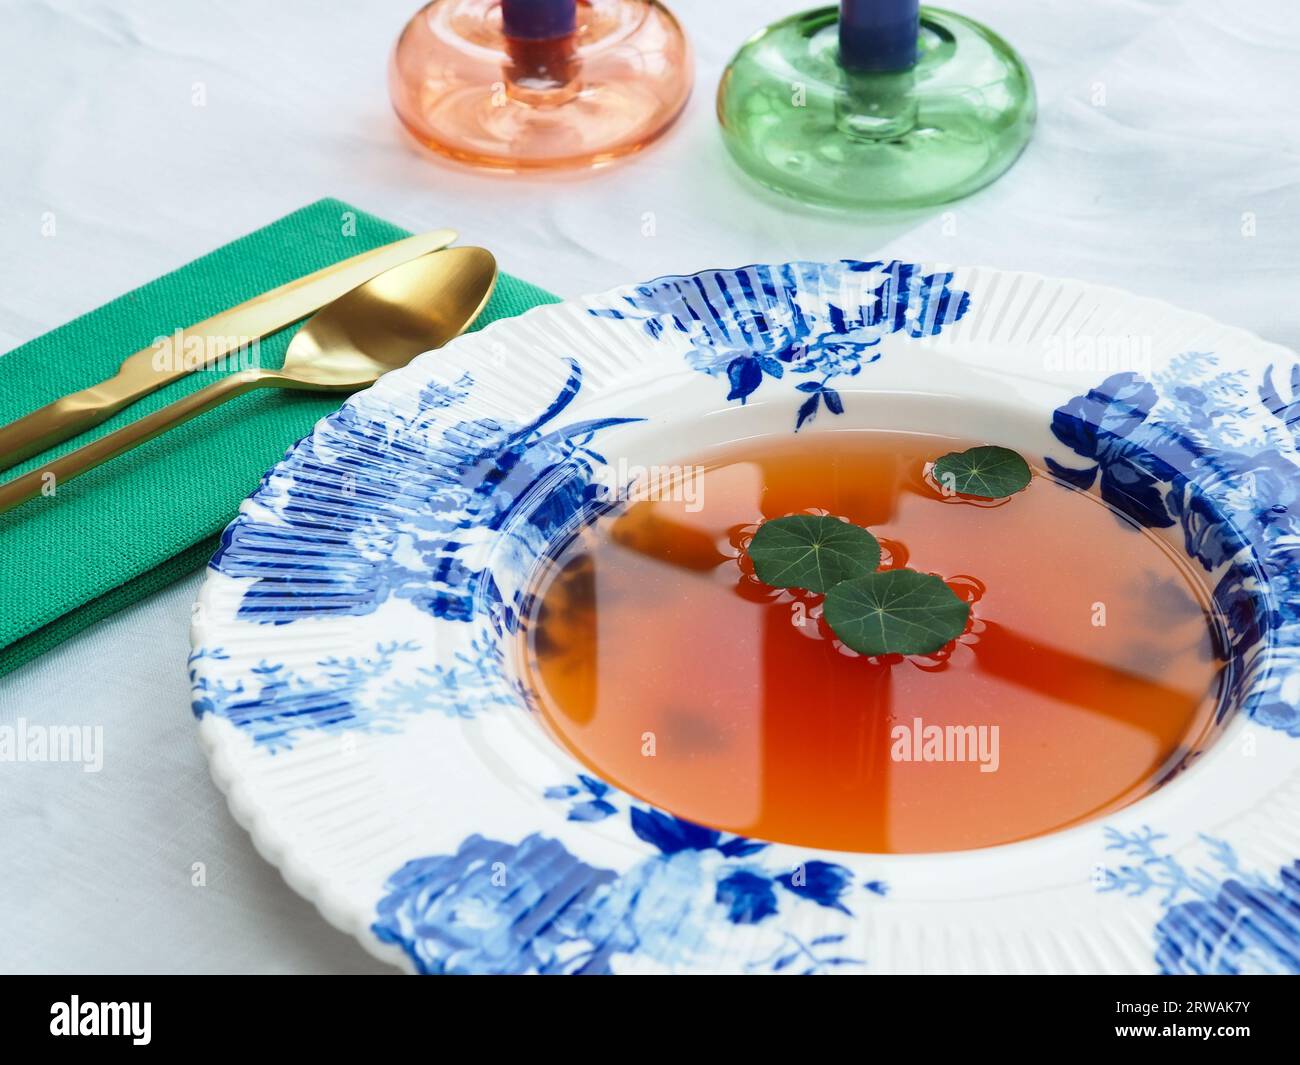 Nahaufnahme eines sonnenverwöhnten Mittagesstisches mit einer porzellanschale im Delfter Stil mit dünner Tomatenconsommé-Suppe oder leichter Brühe, garniert mit Kapuzinerkressblättern Stockfoto